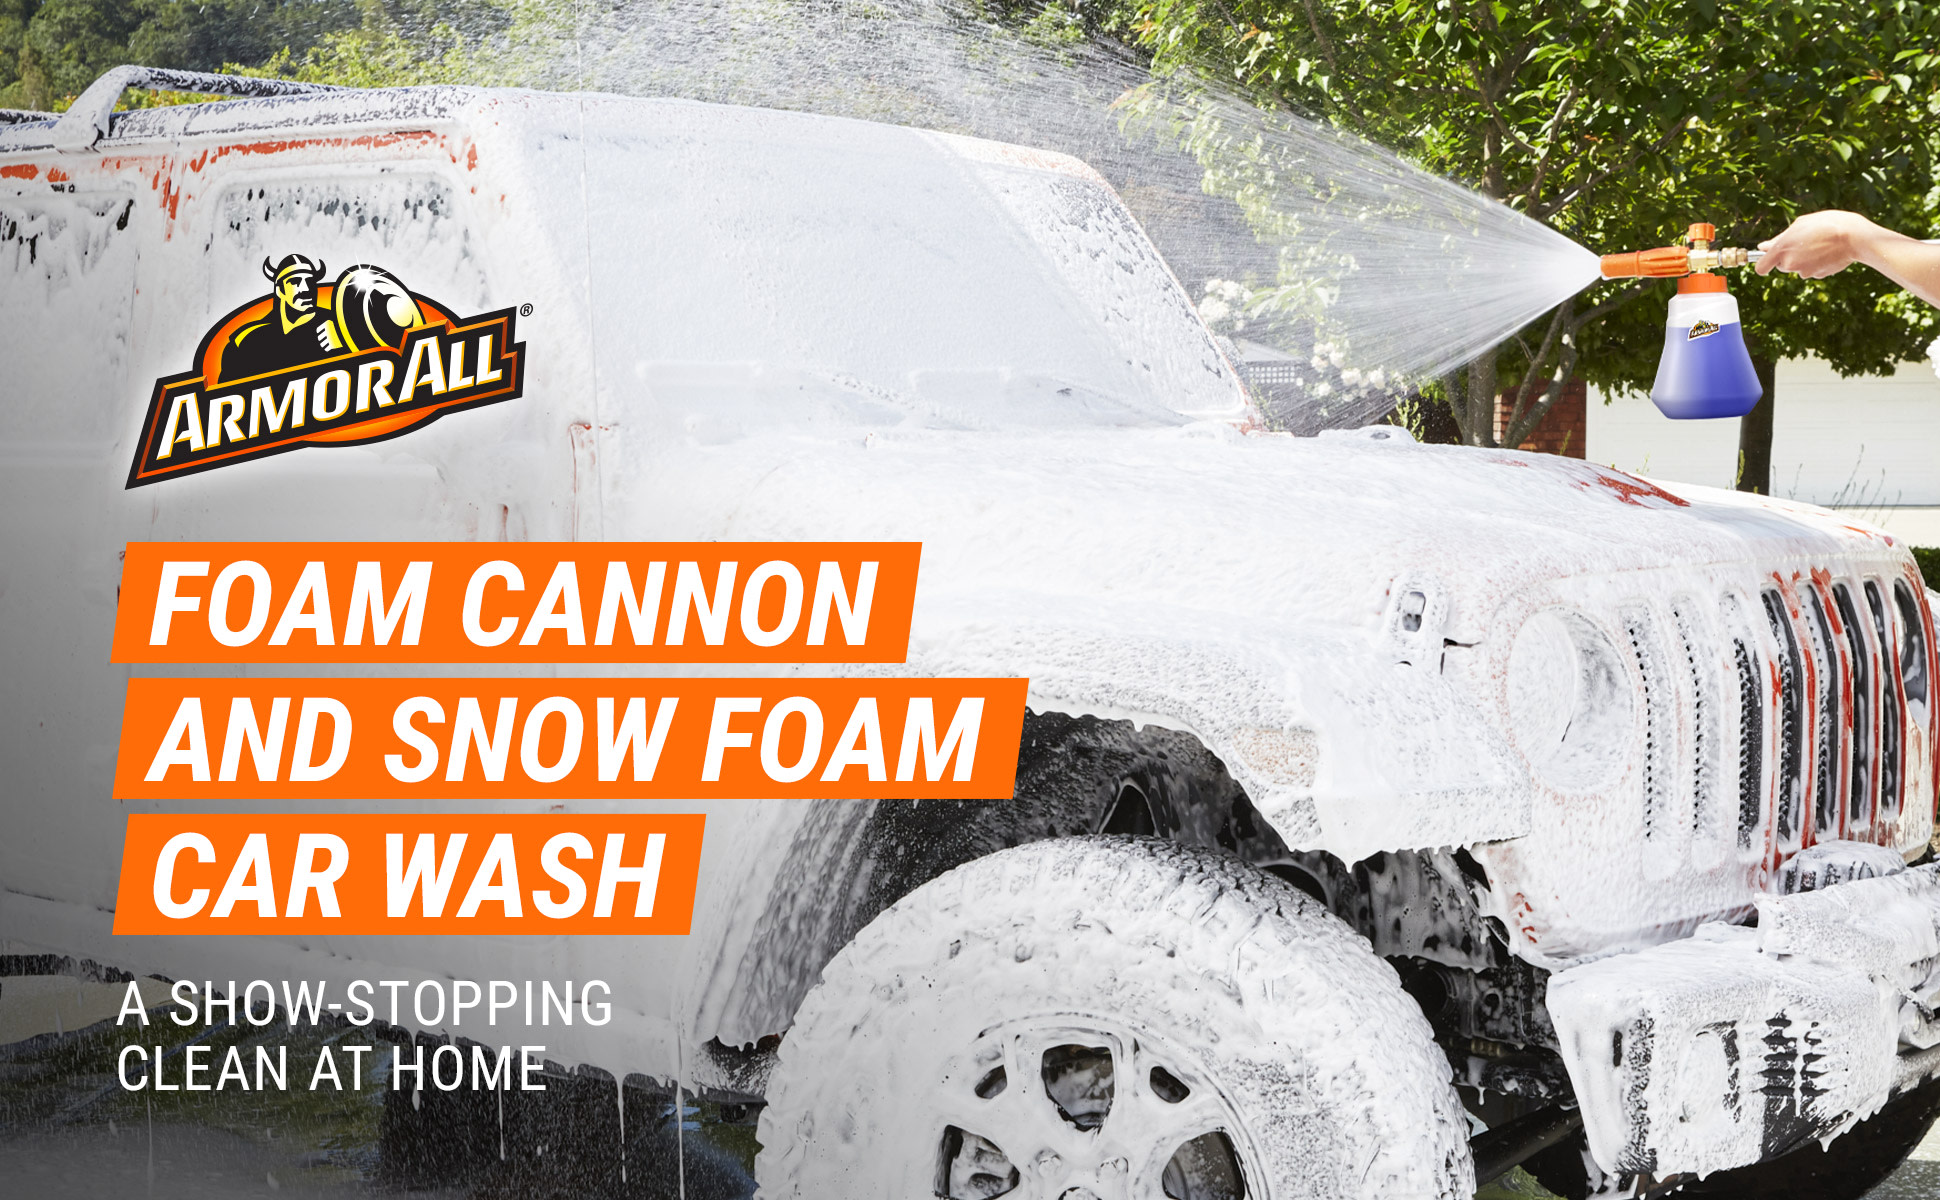  Armor All Snow Foam Wash by Armor All, Foaming Car